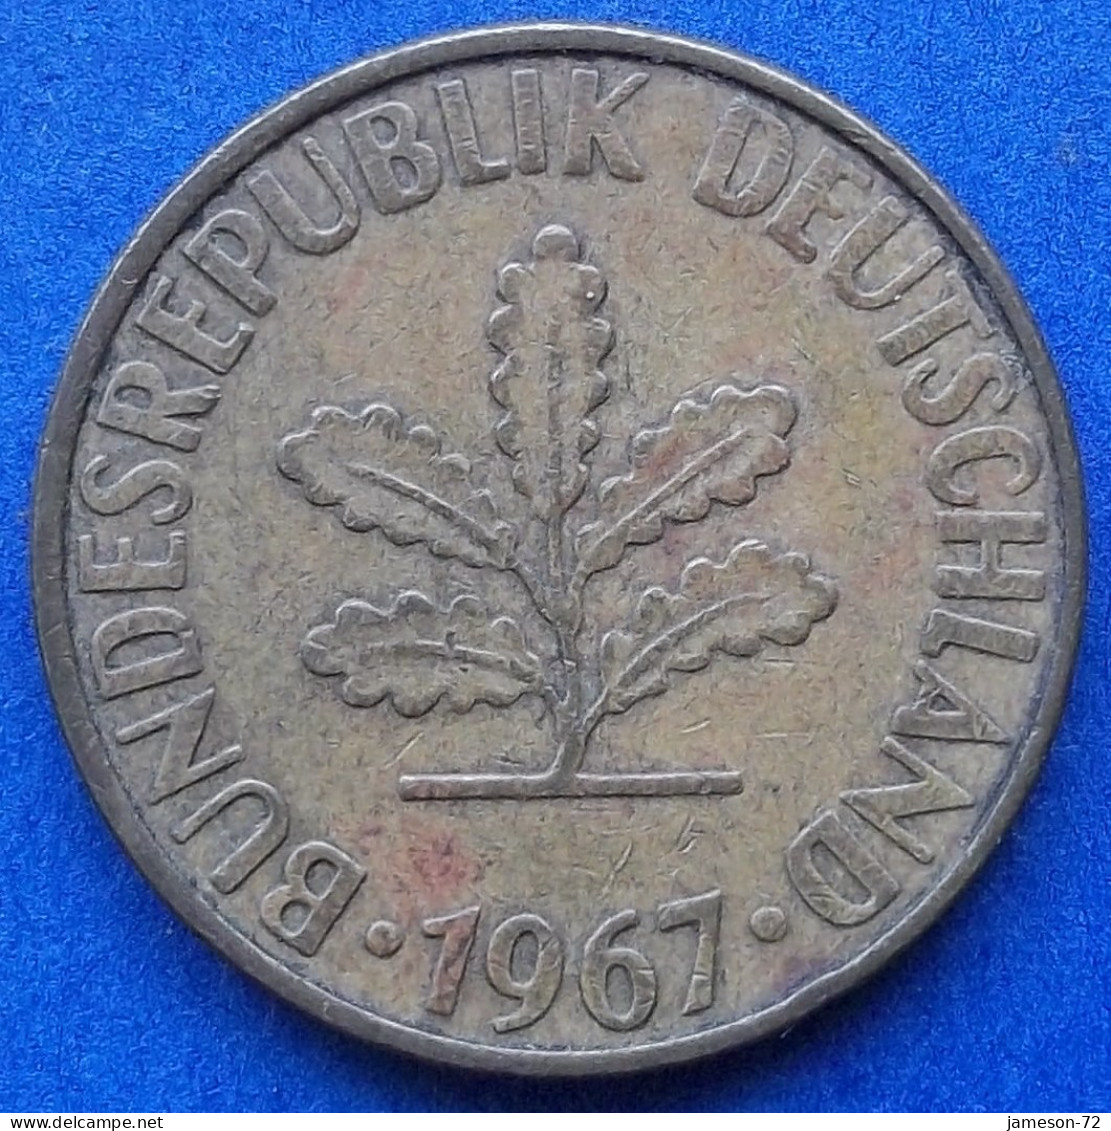 GERMANY - 10 Pfennig 1967 F KM# 108 Federal Republic Mark Coinage (1946-2002) - Edelweiss Coins - 10 Pfennig